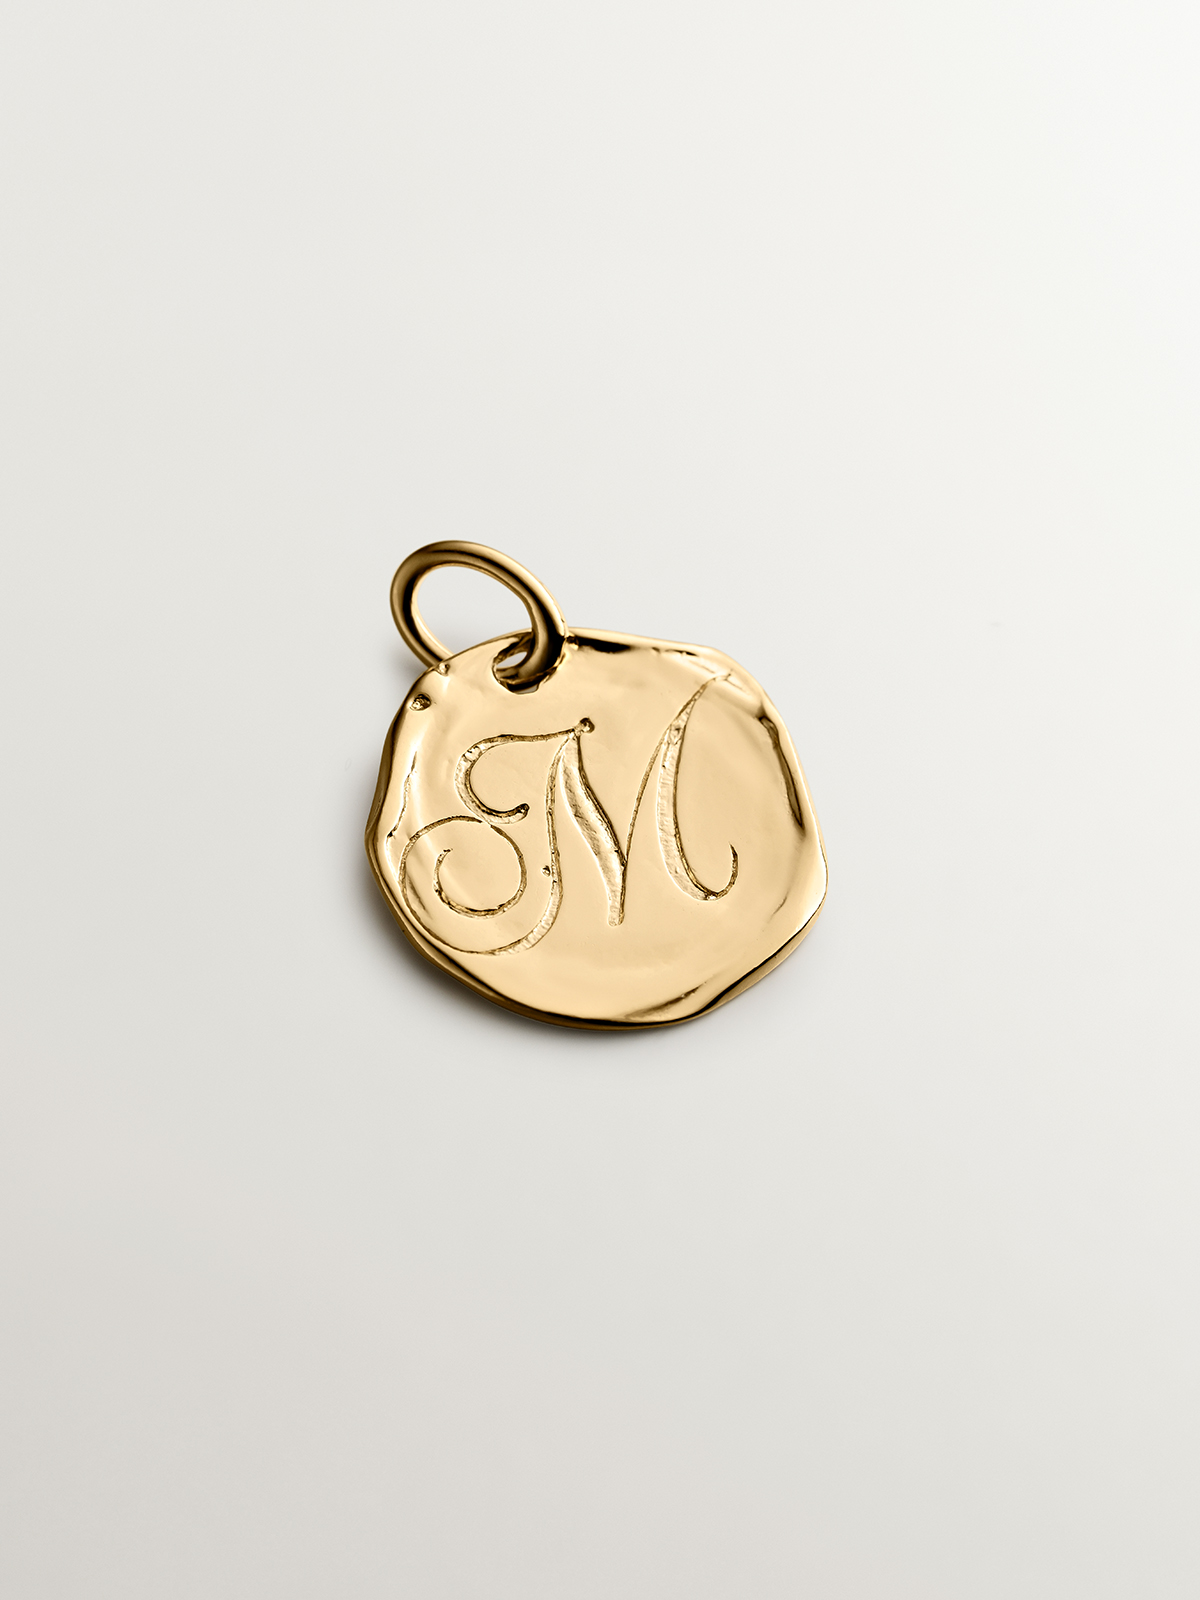 Charme artisanal en argent 925 plaqué en or jaune 18K avec initiale M